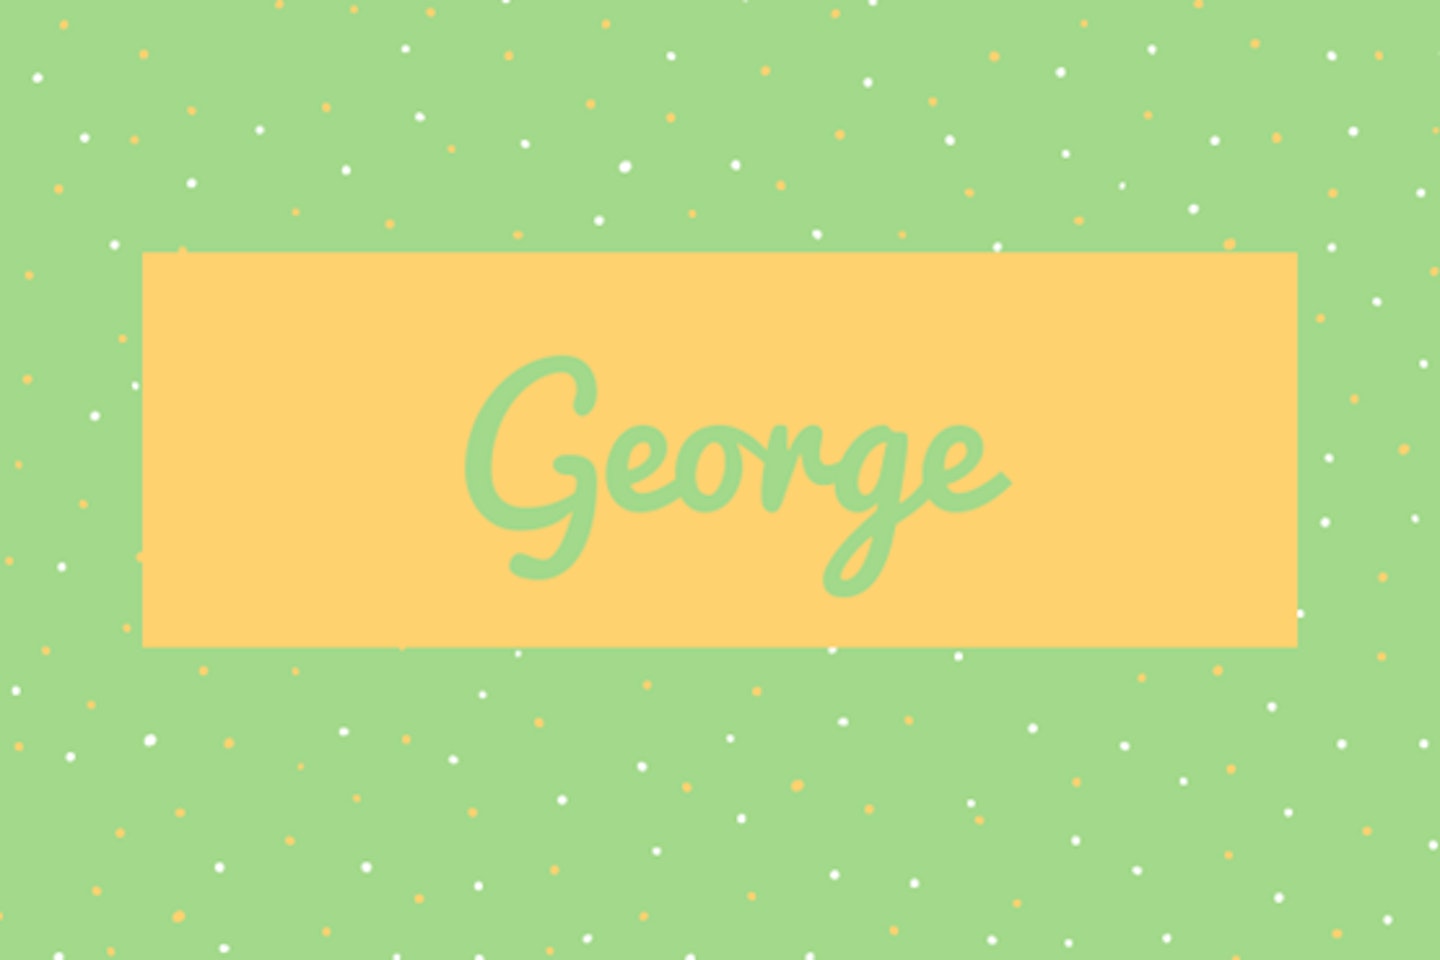 28) George